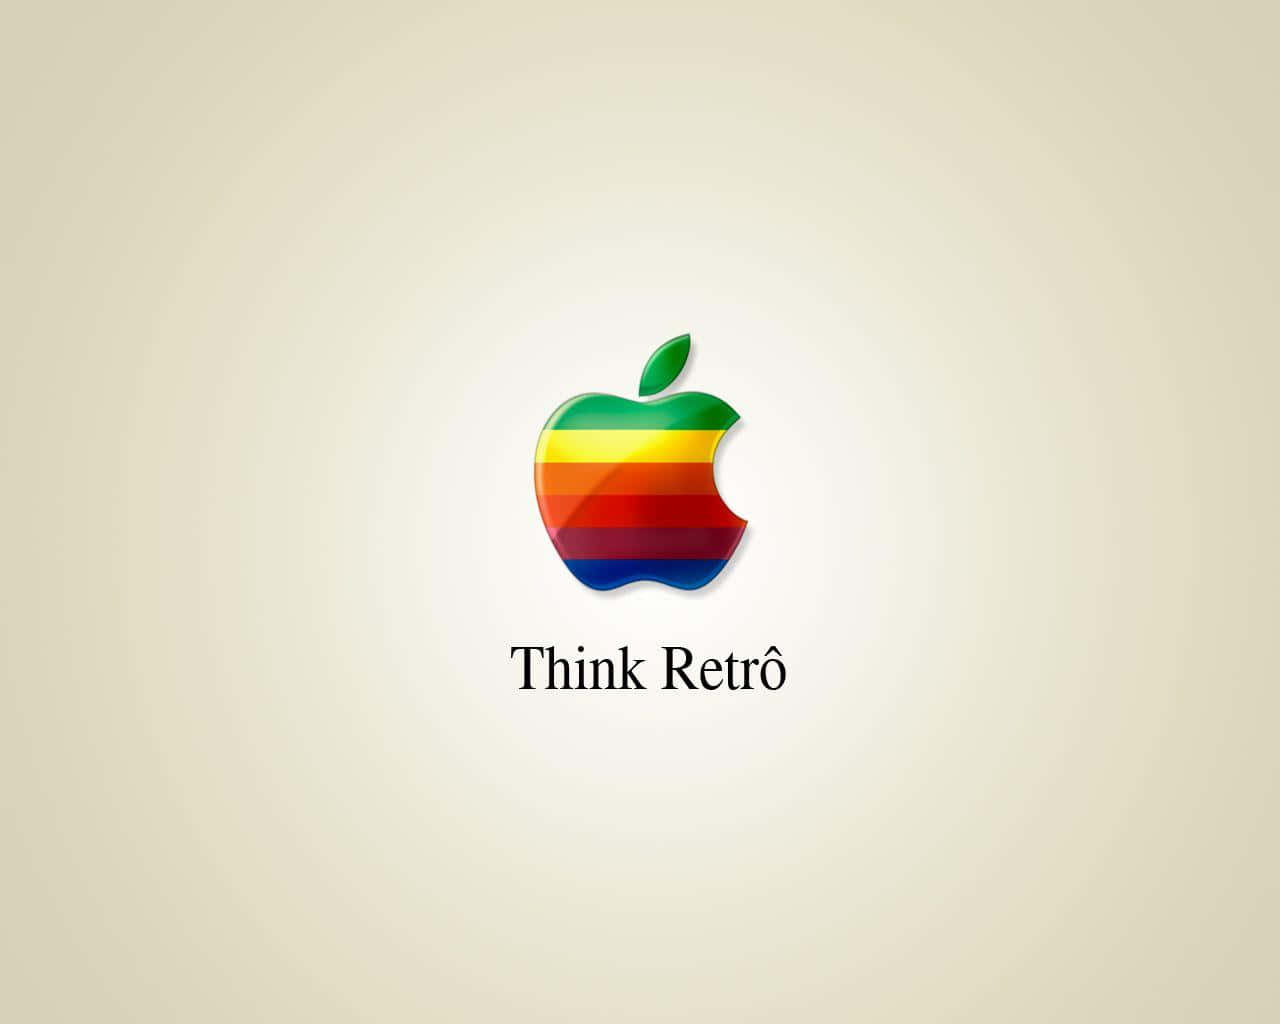 Papelde Parede Com O Logotipo Retro Da Apple. Papel de Parede